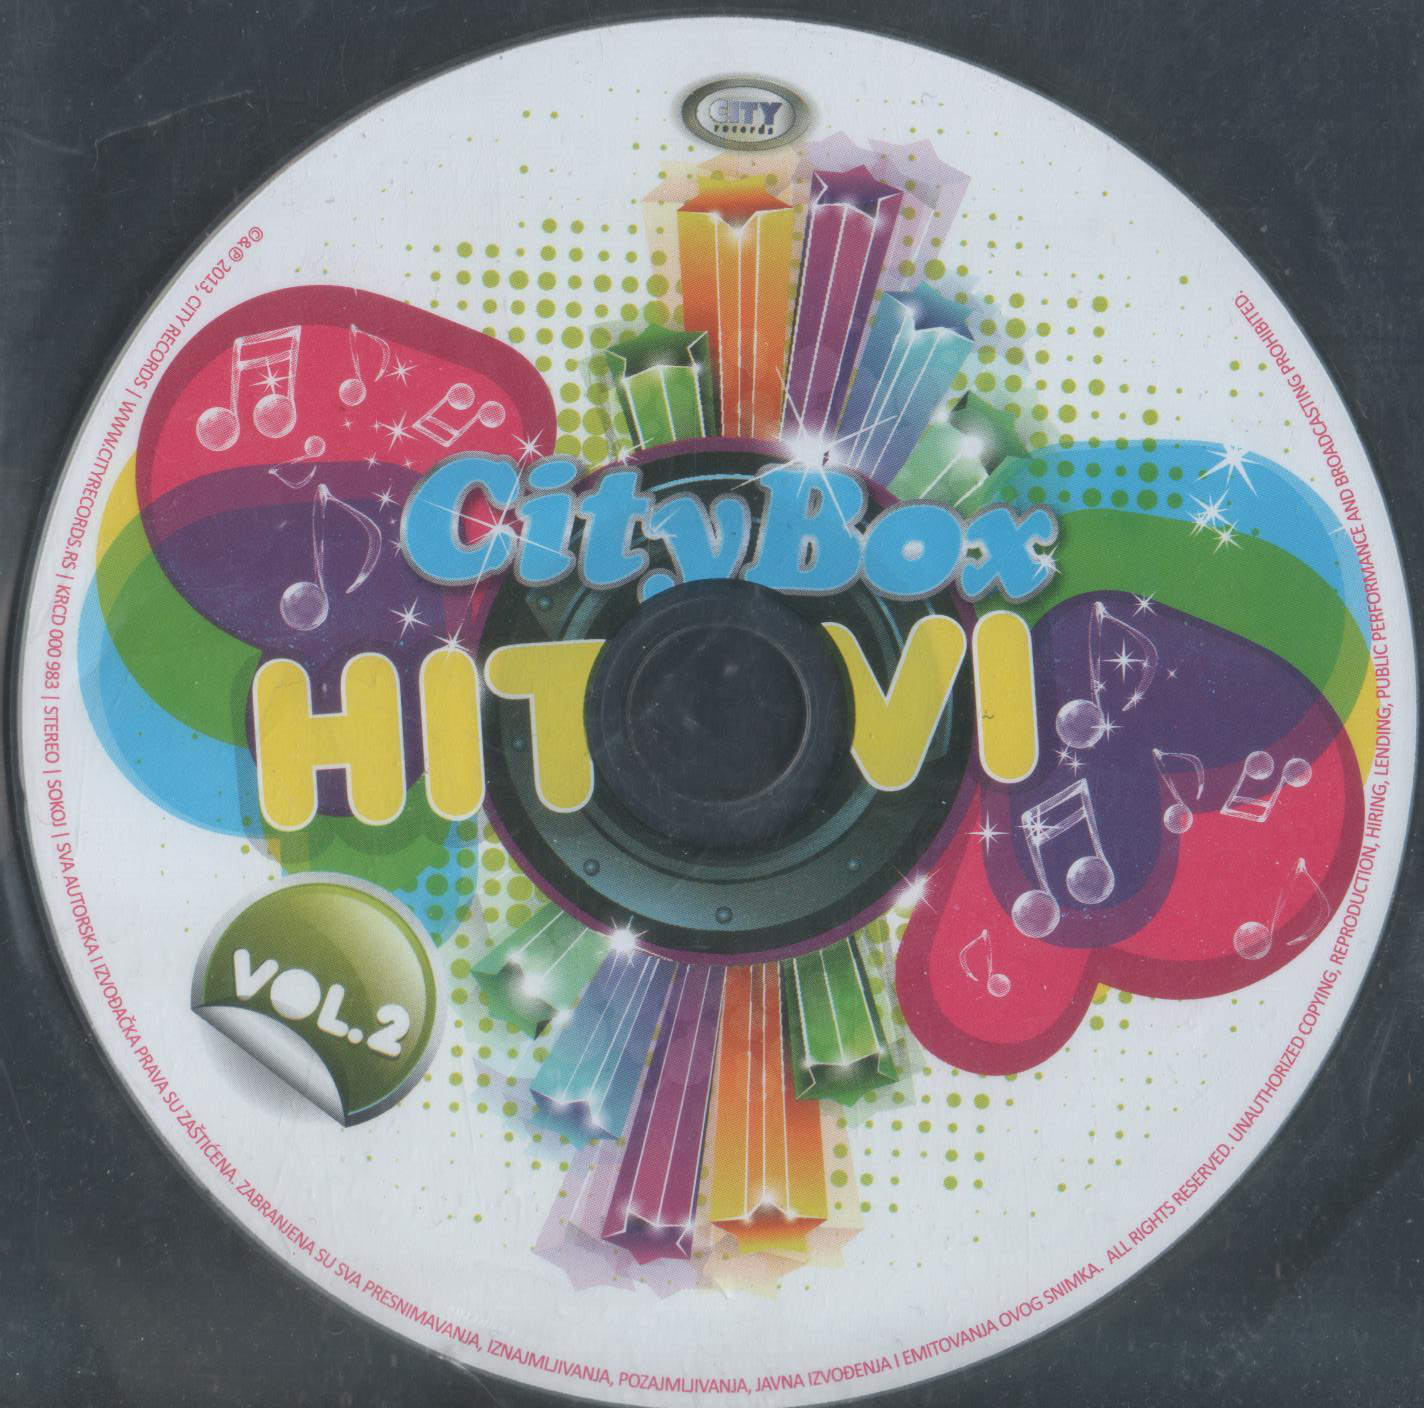 CBHitovi 2 CD